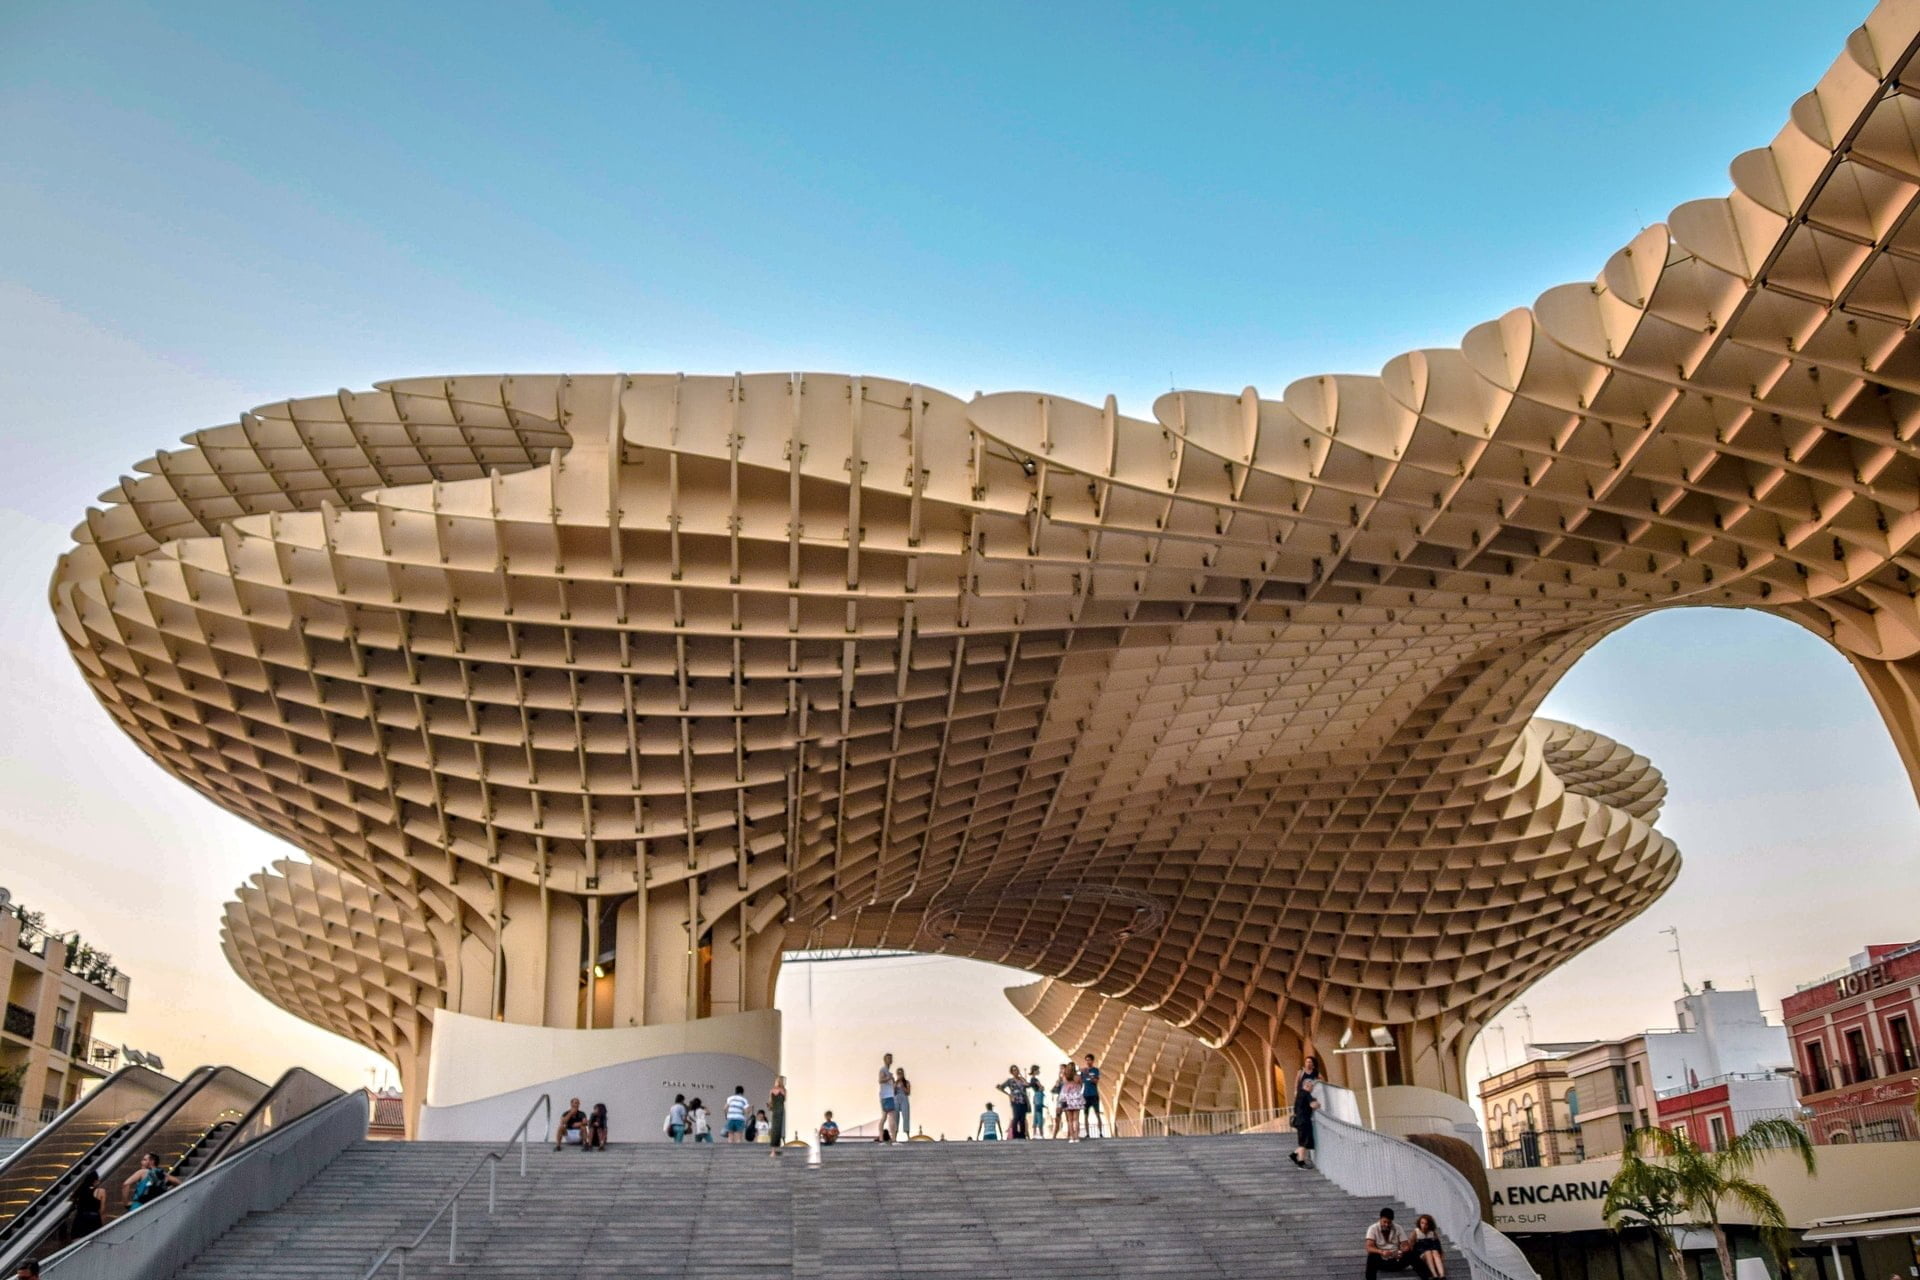 Carbon-Neutral Architecture: Metropol Parasol, Plaza de la Encarnación, Seville, Spain